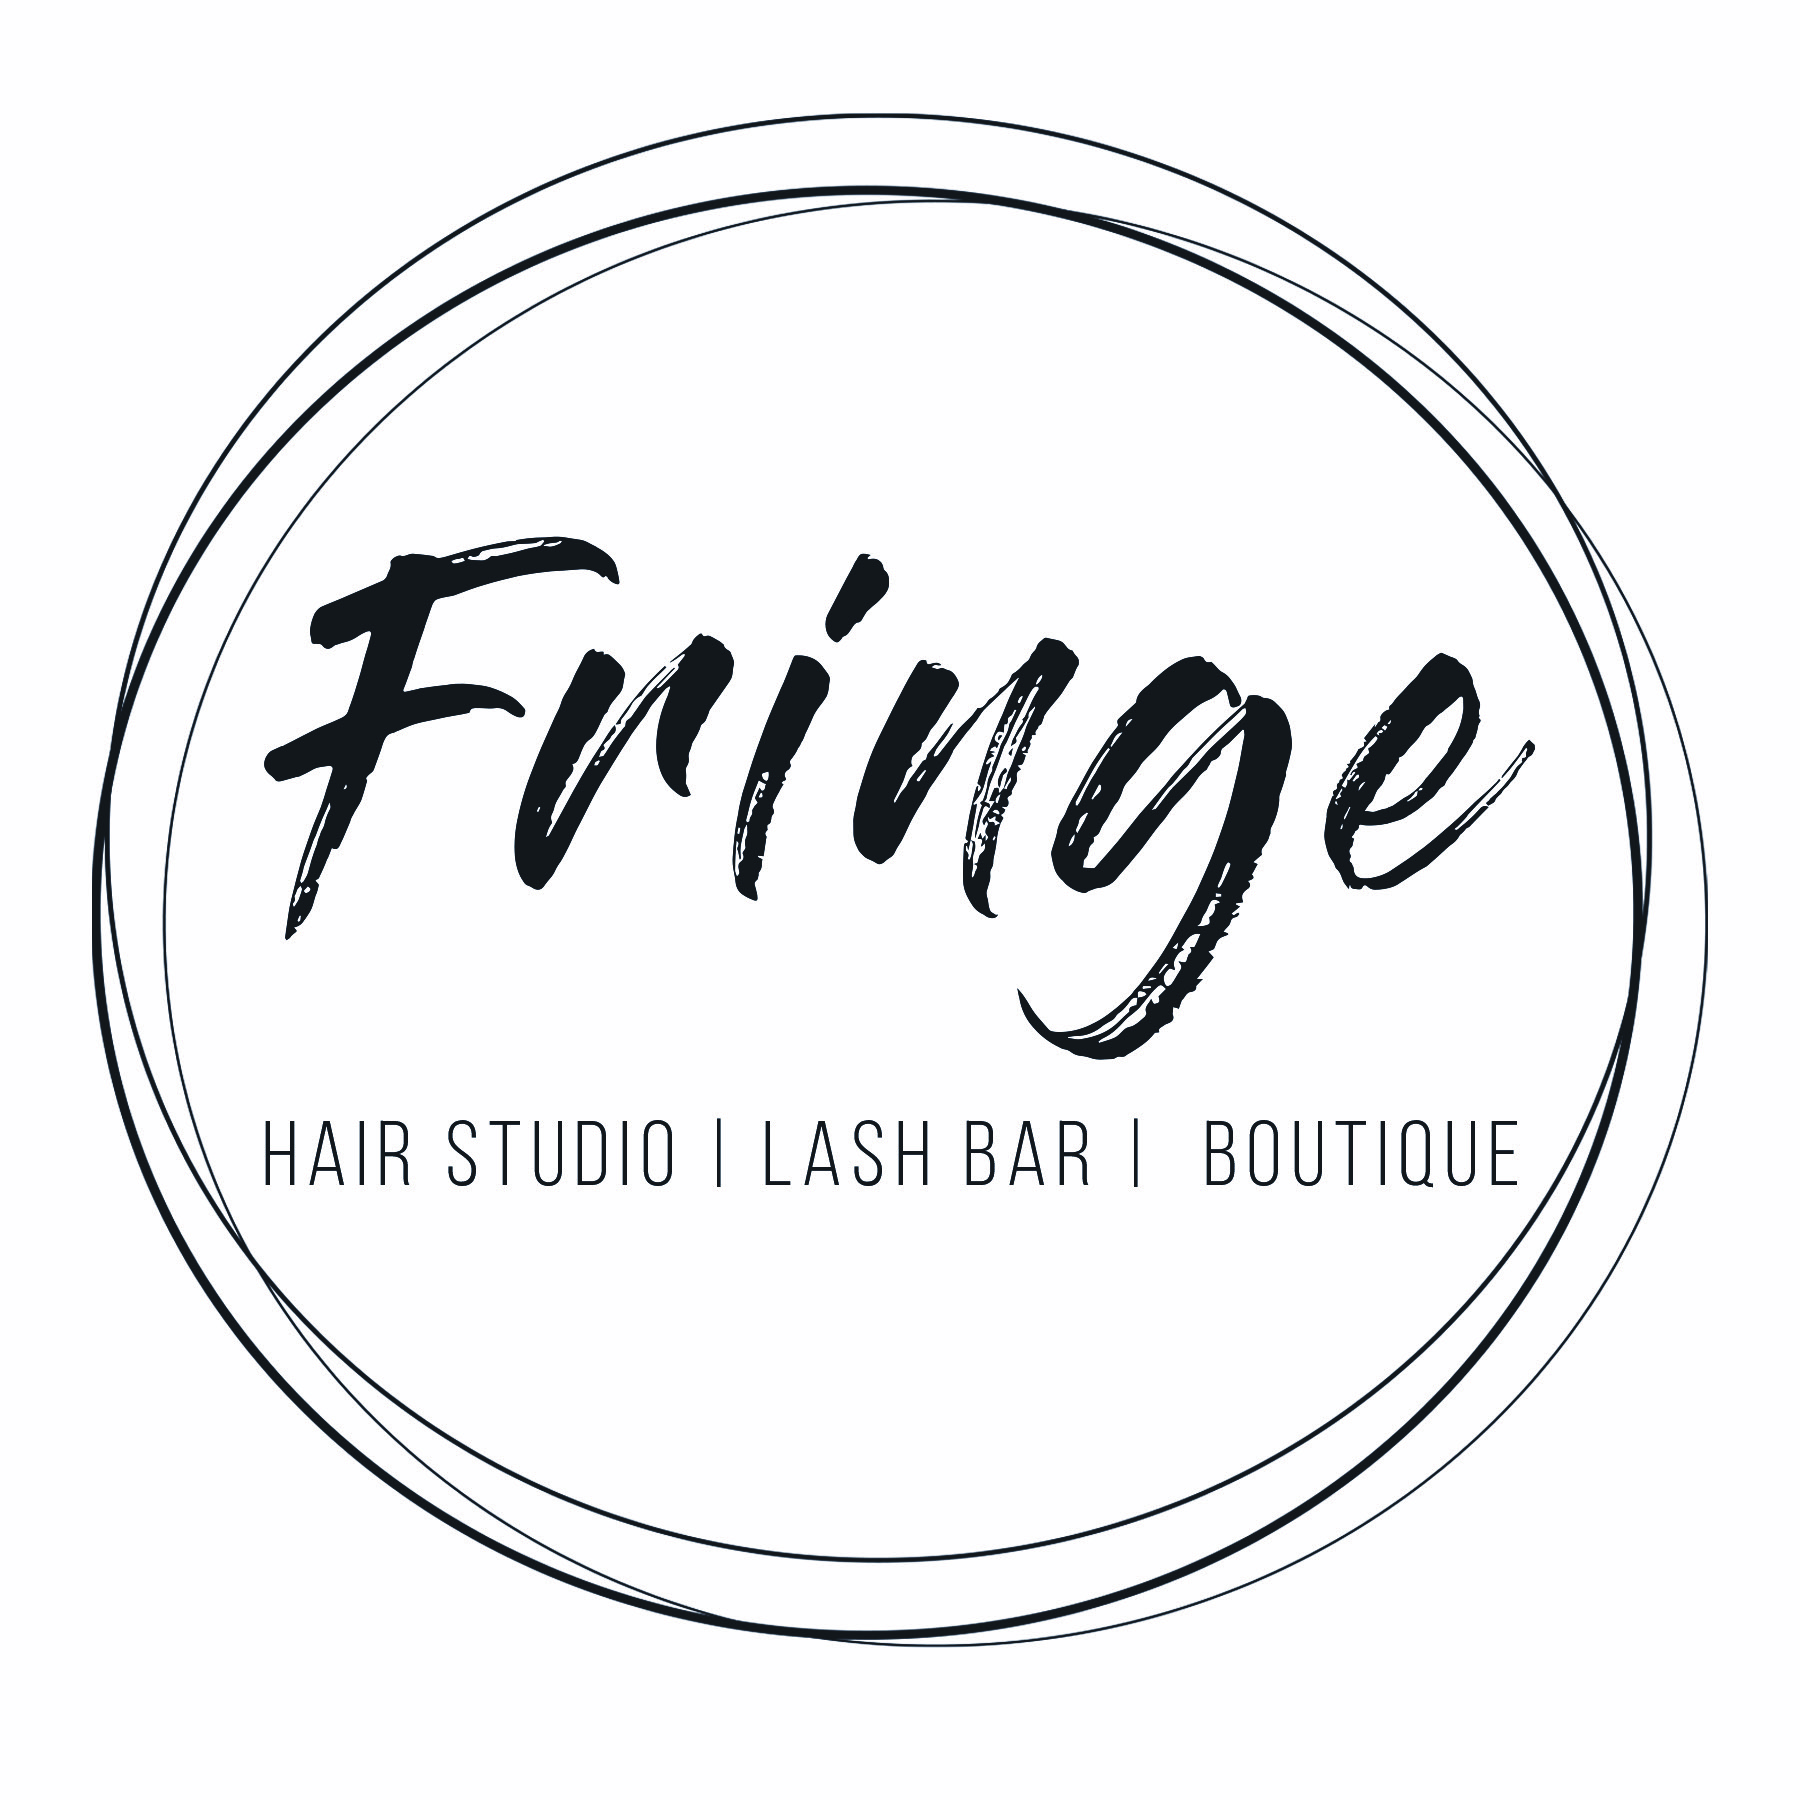 Fringe Salon